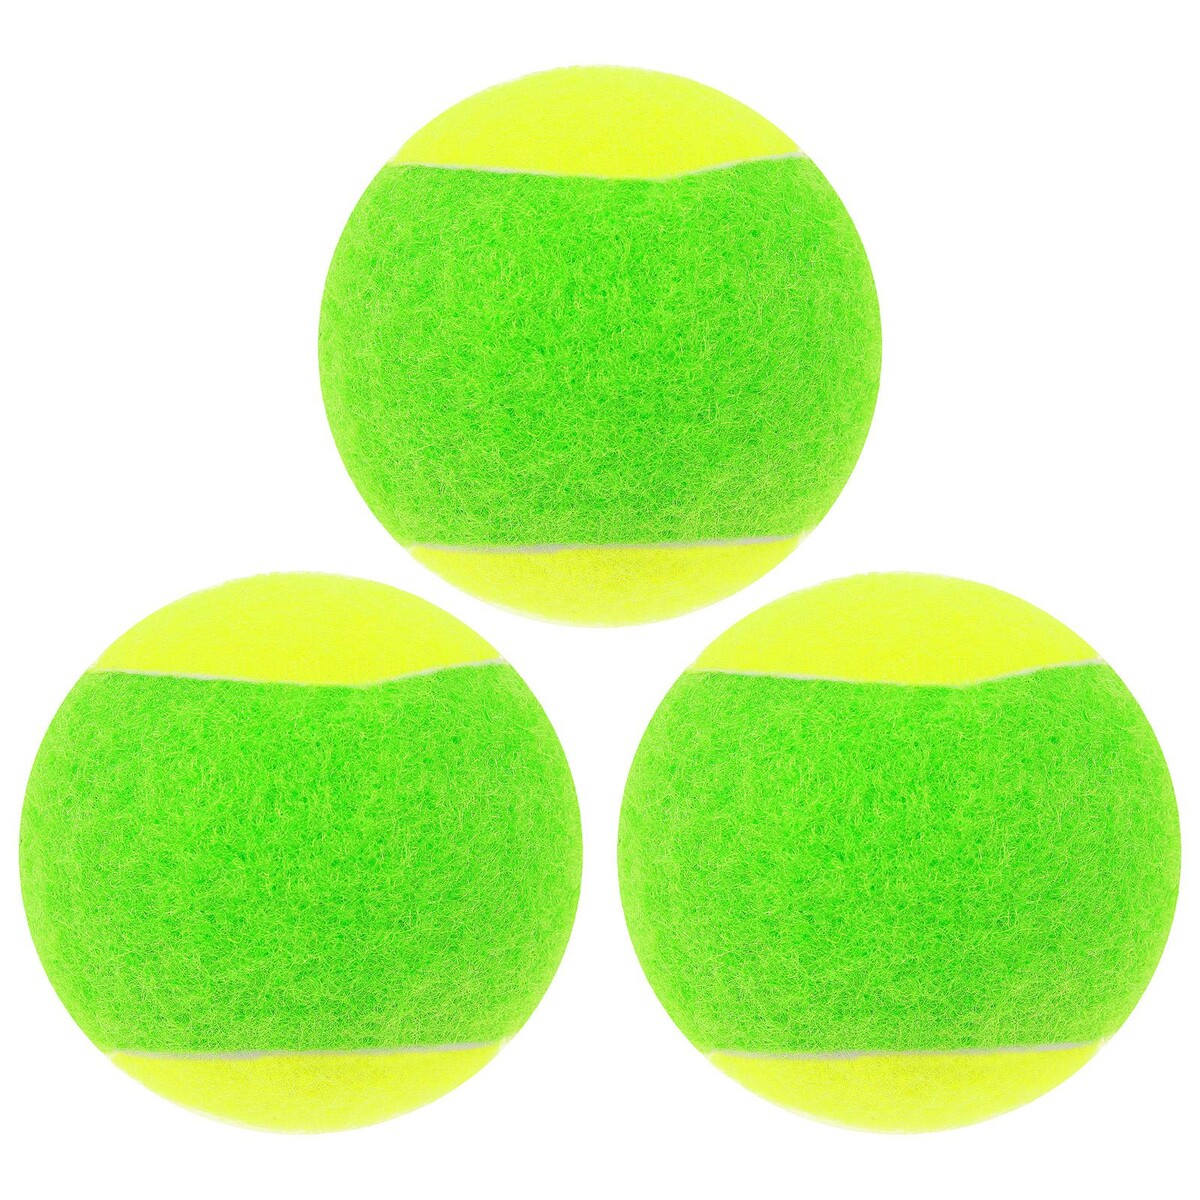 Набор мячей для большого тенниса onlytop swidon, 3 шт. мячи для большого тенниса sportex 3 штуки в тубе c33249